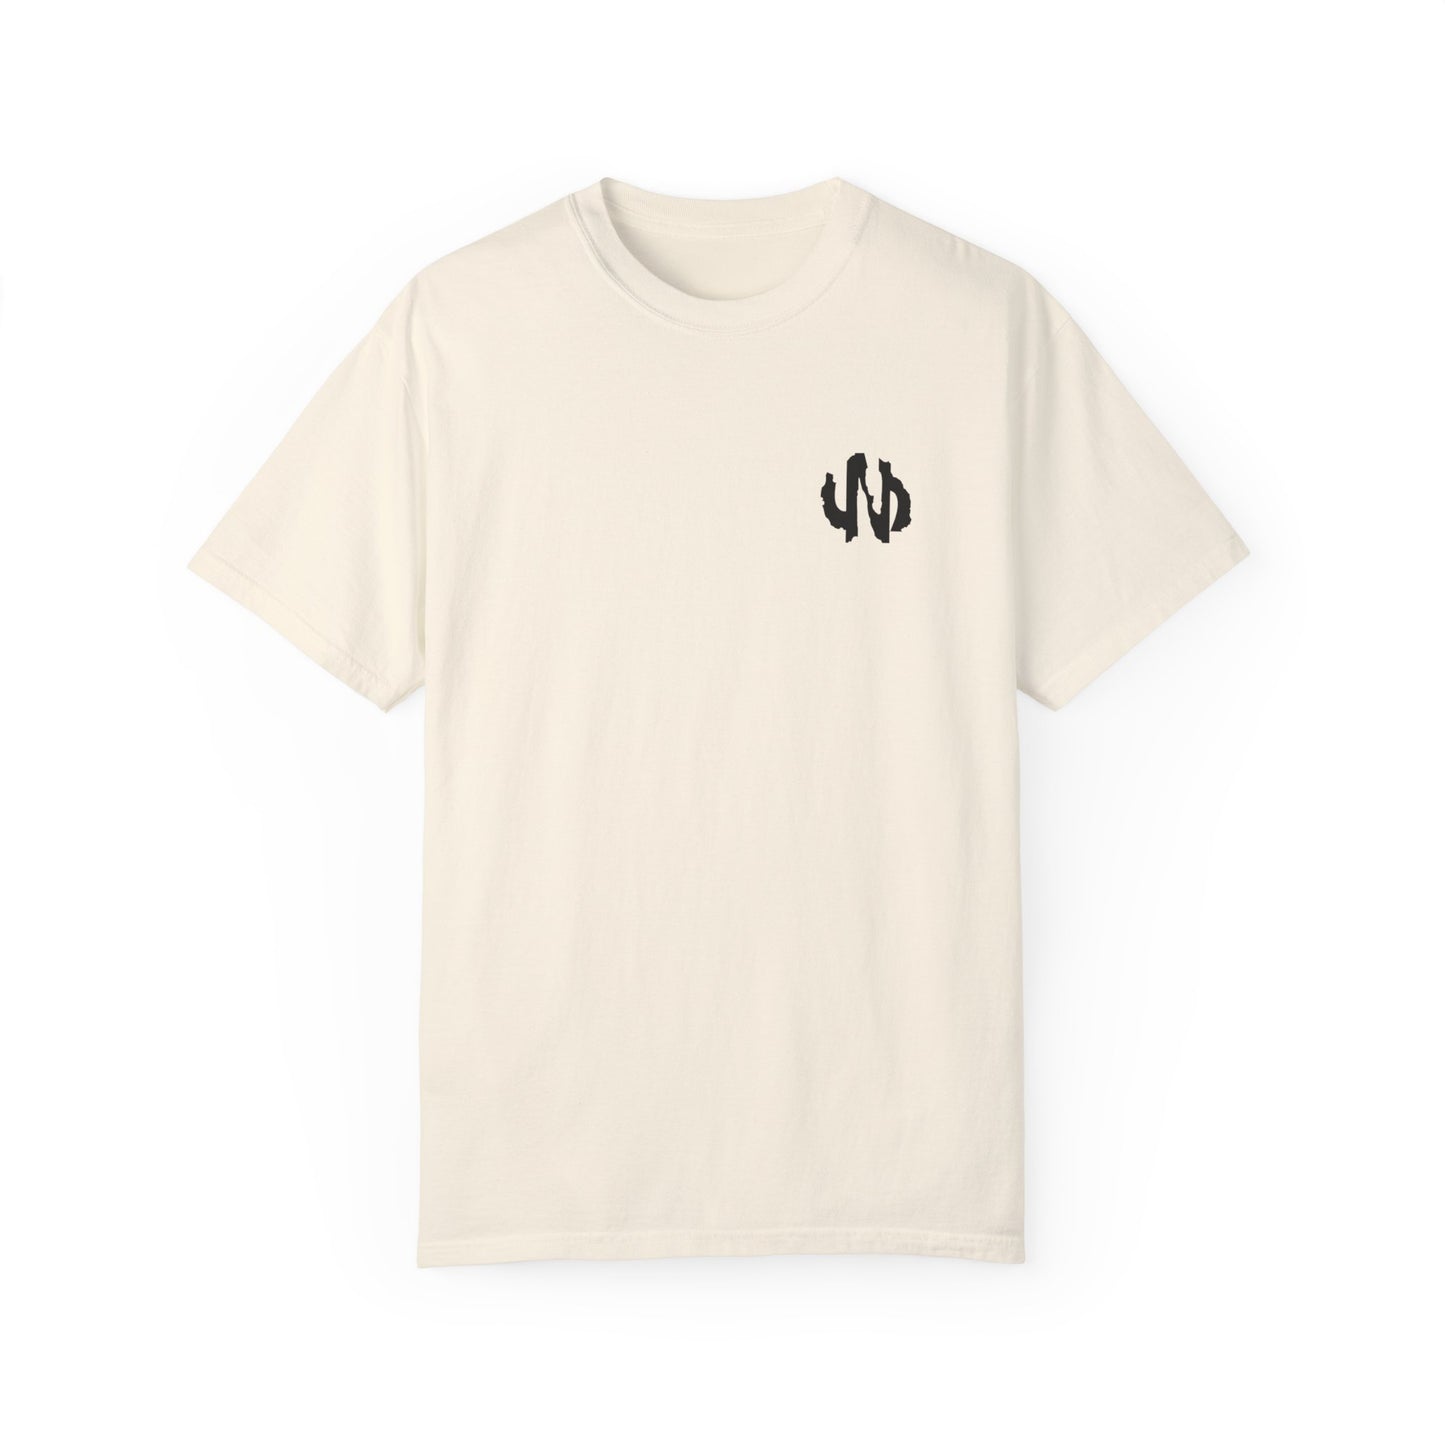 T-shirt unisexe design d'amour